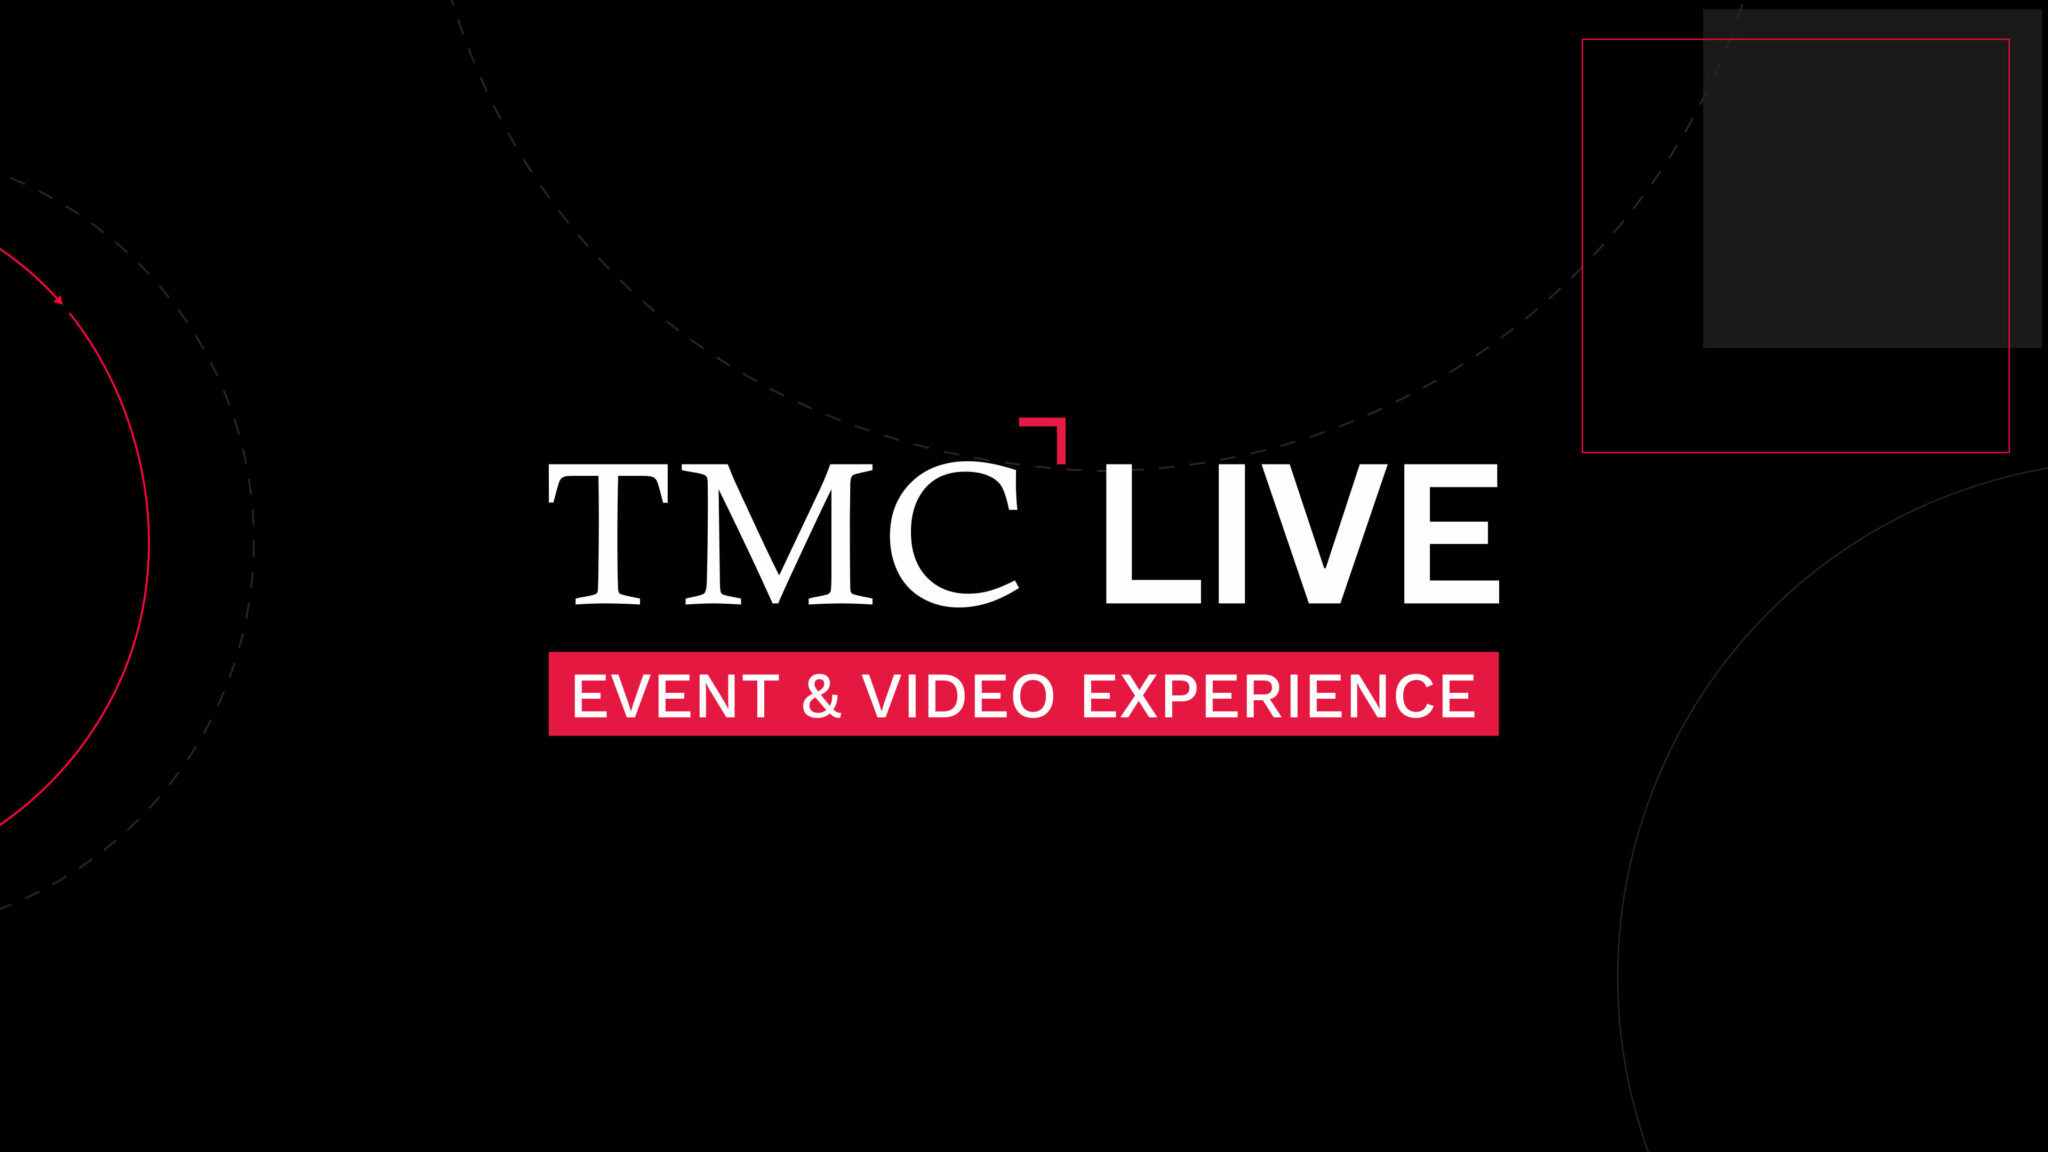 Neues Banner der TMC-Live mit der Unterschrift 